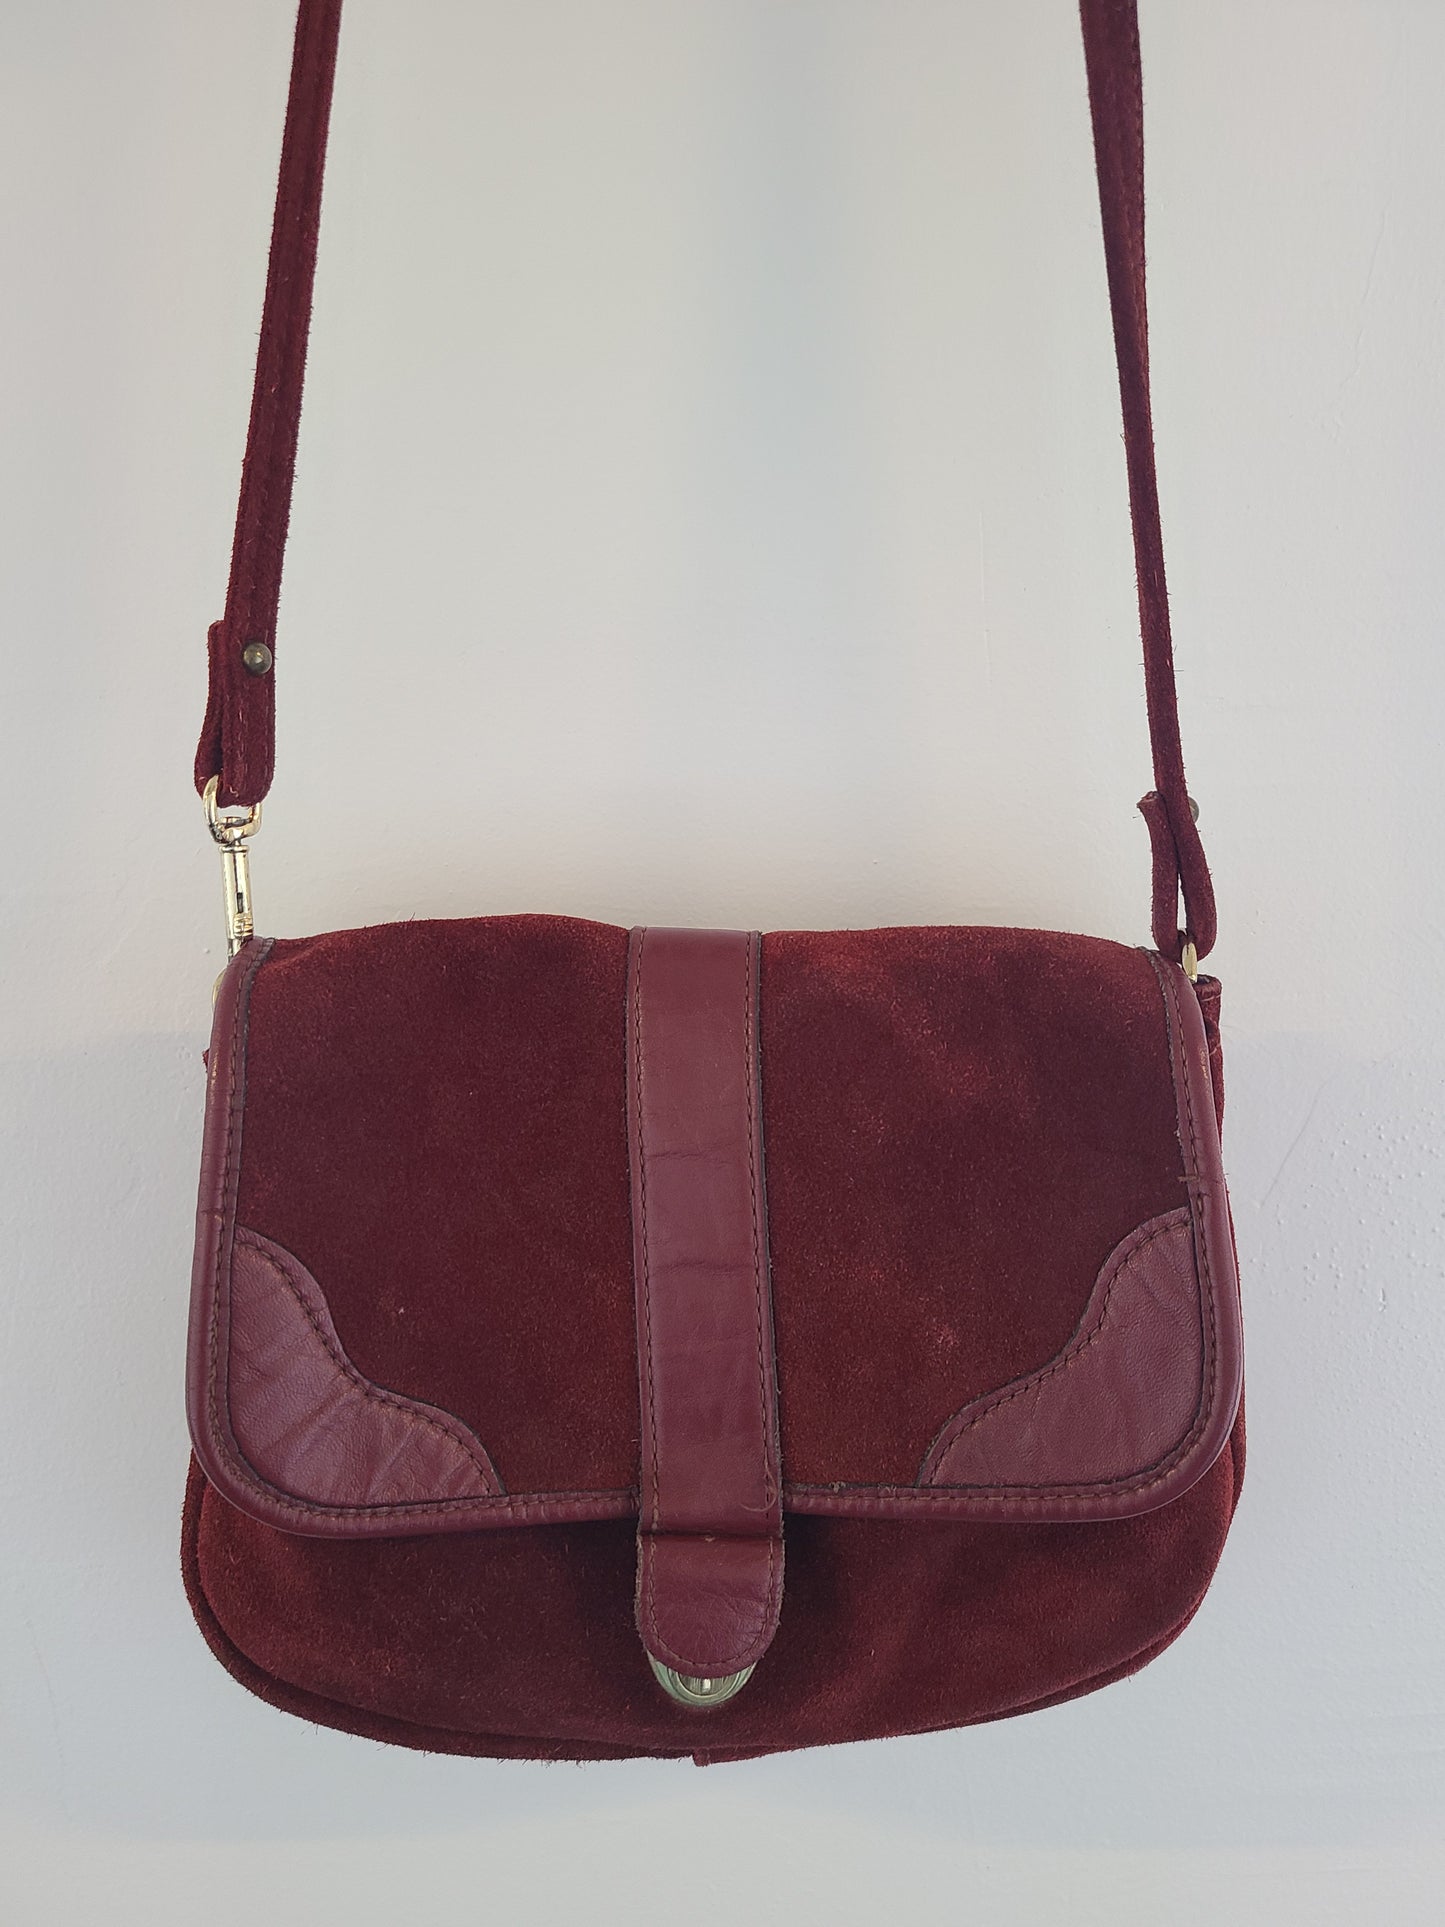 Vintage 1970s Burgundy Suede Shoulder Bag